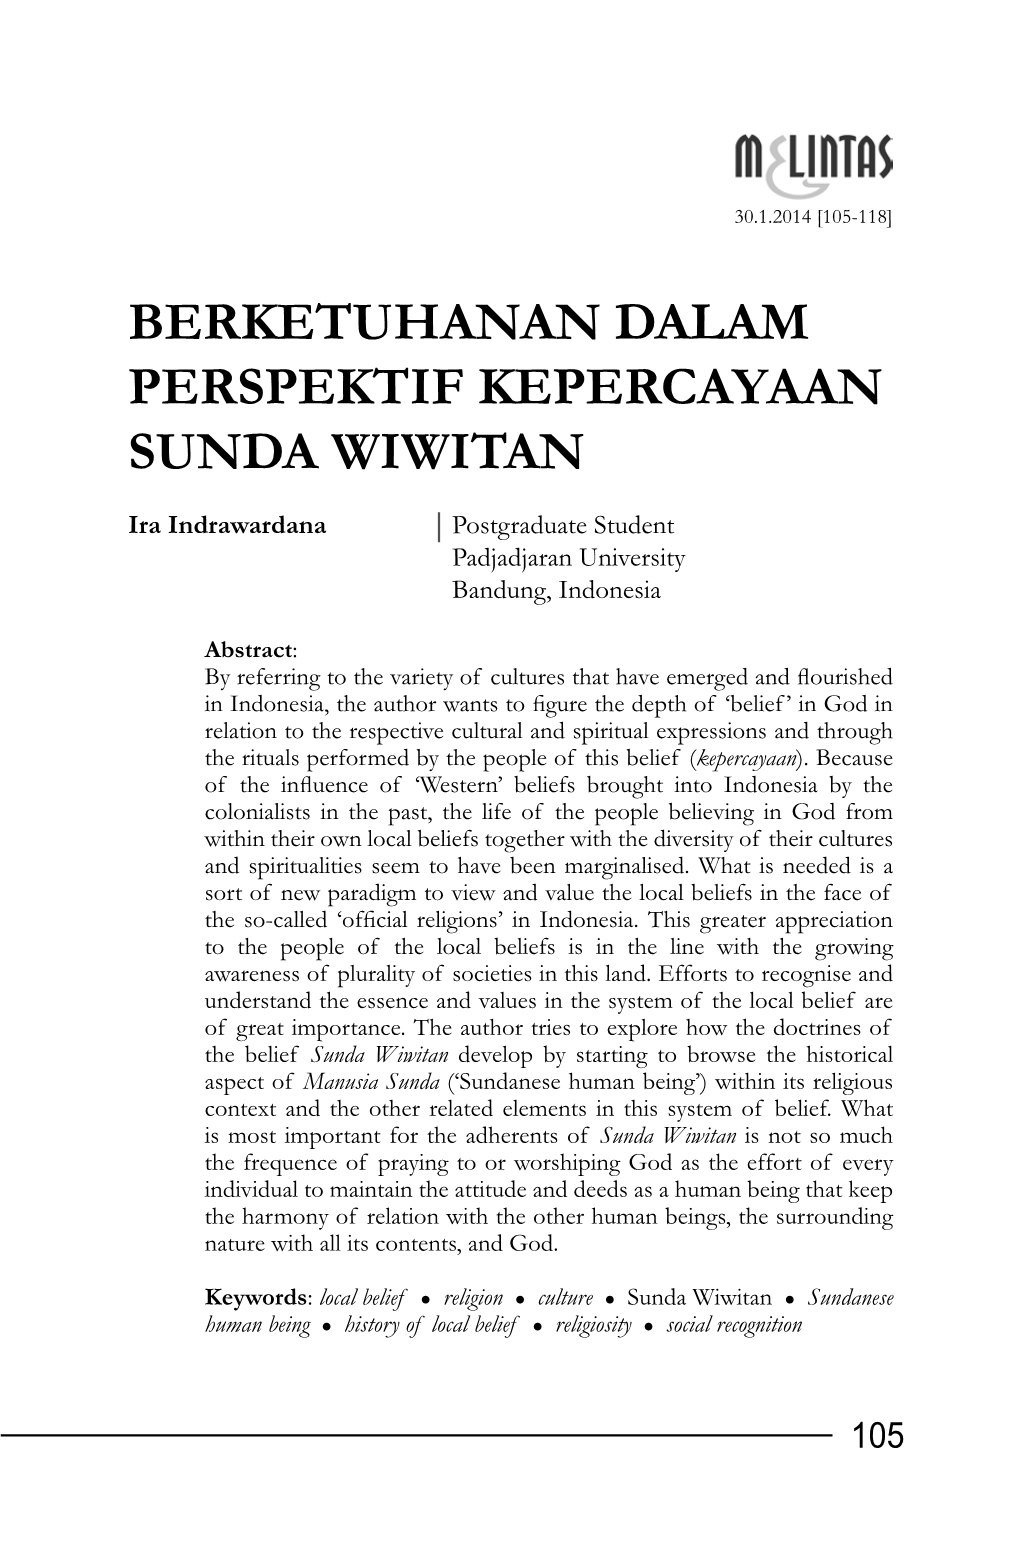 Berketuhanan Dalam Perspektif Kepercayaan Sunda Wiwitan